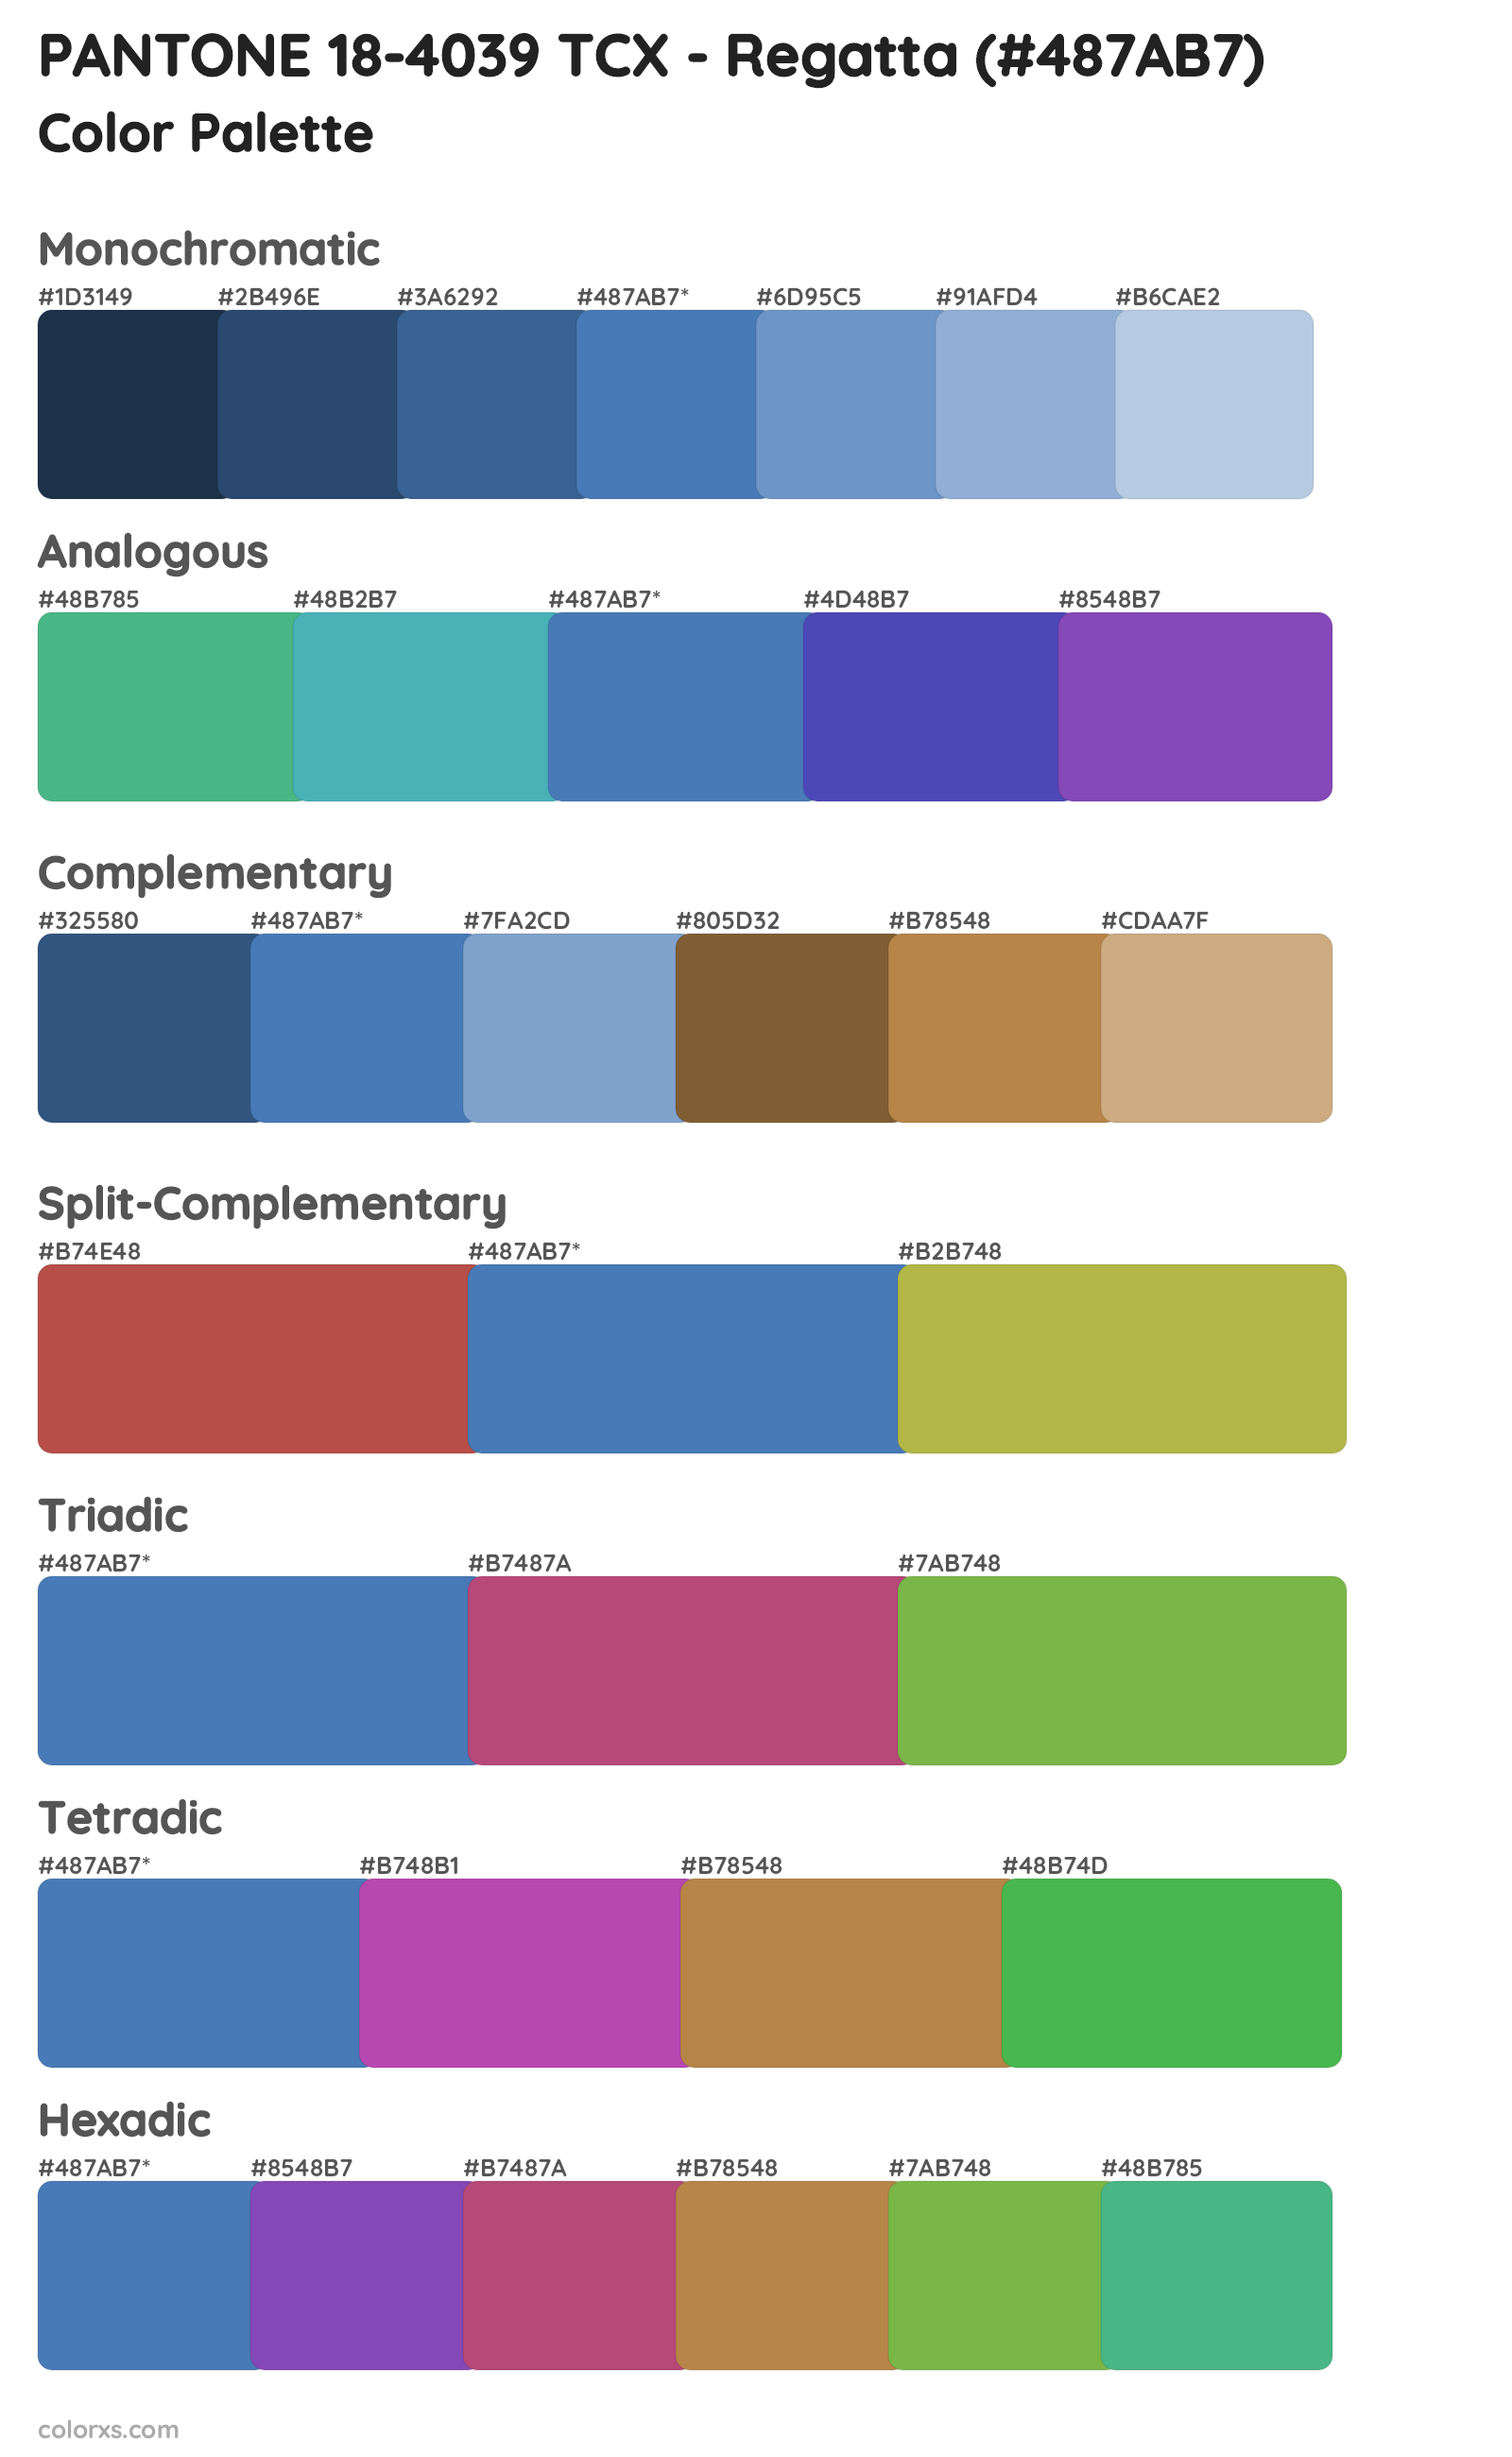 PANTONE 18-4039 TCX - Regatta Color Scheme Palettes